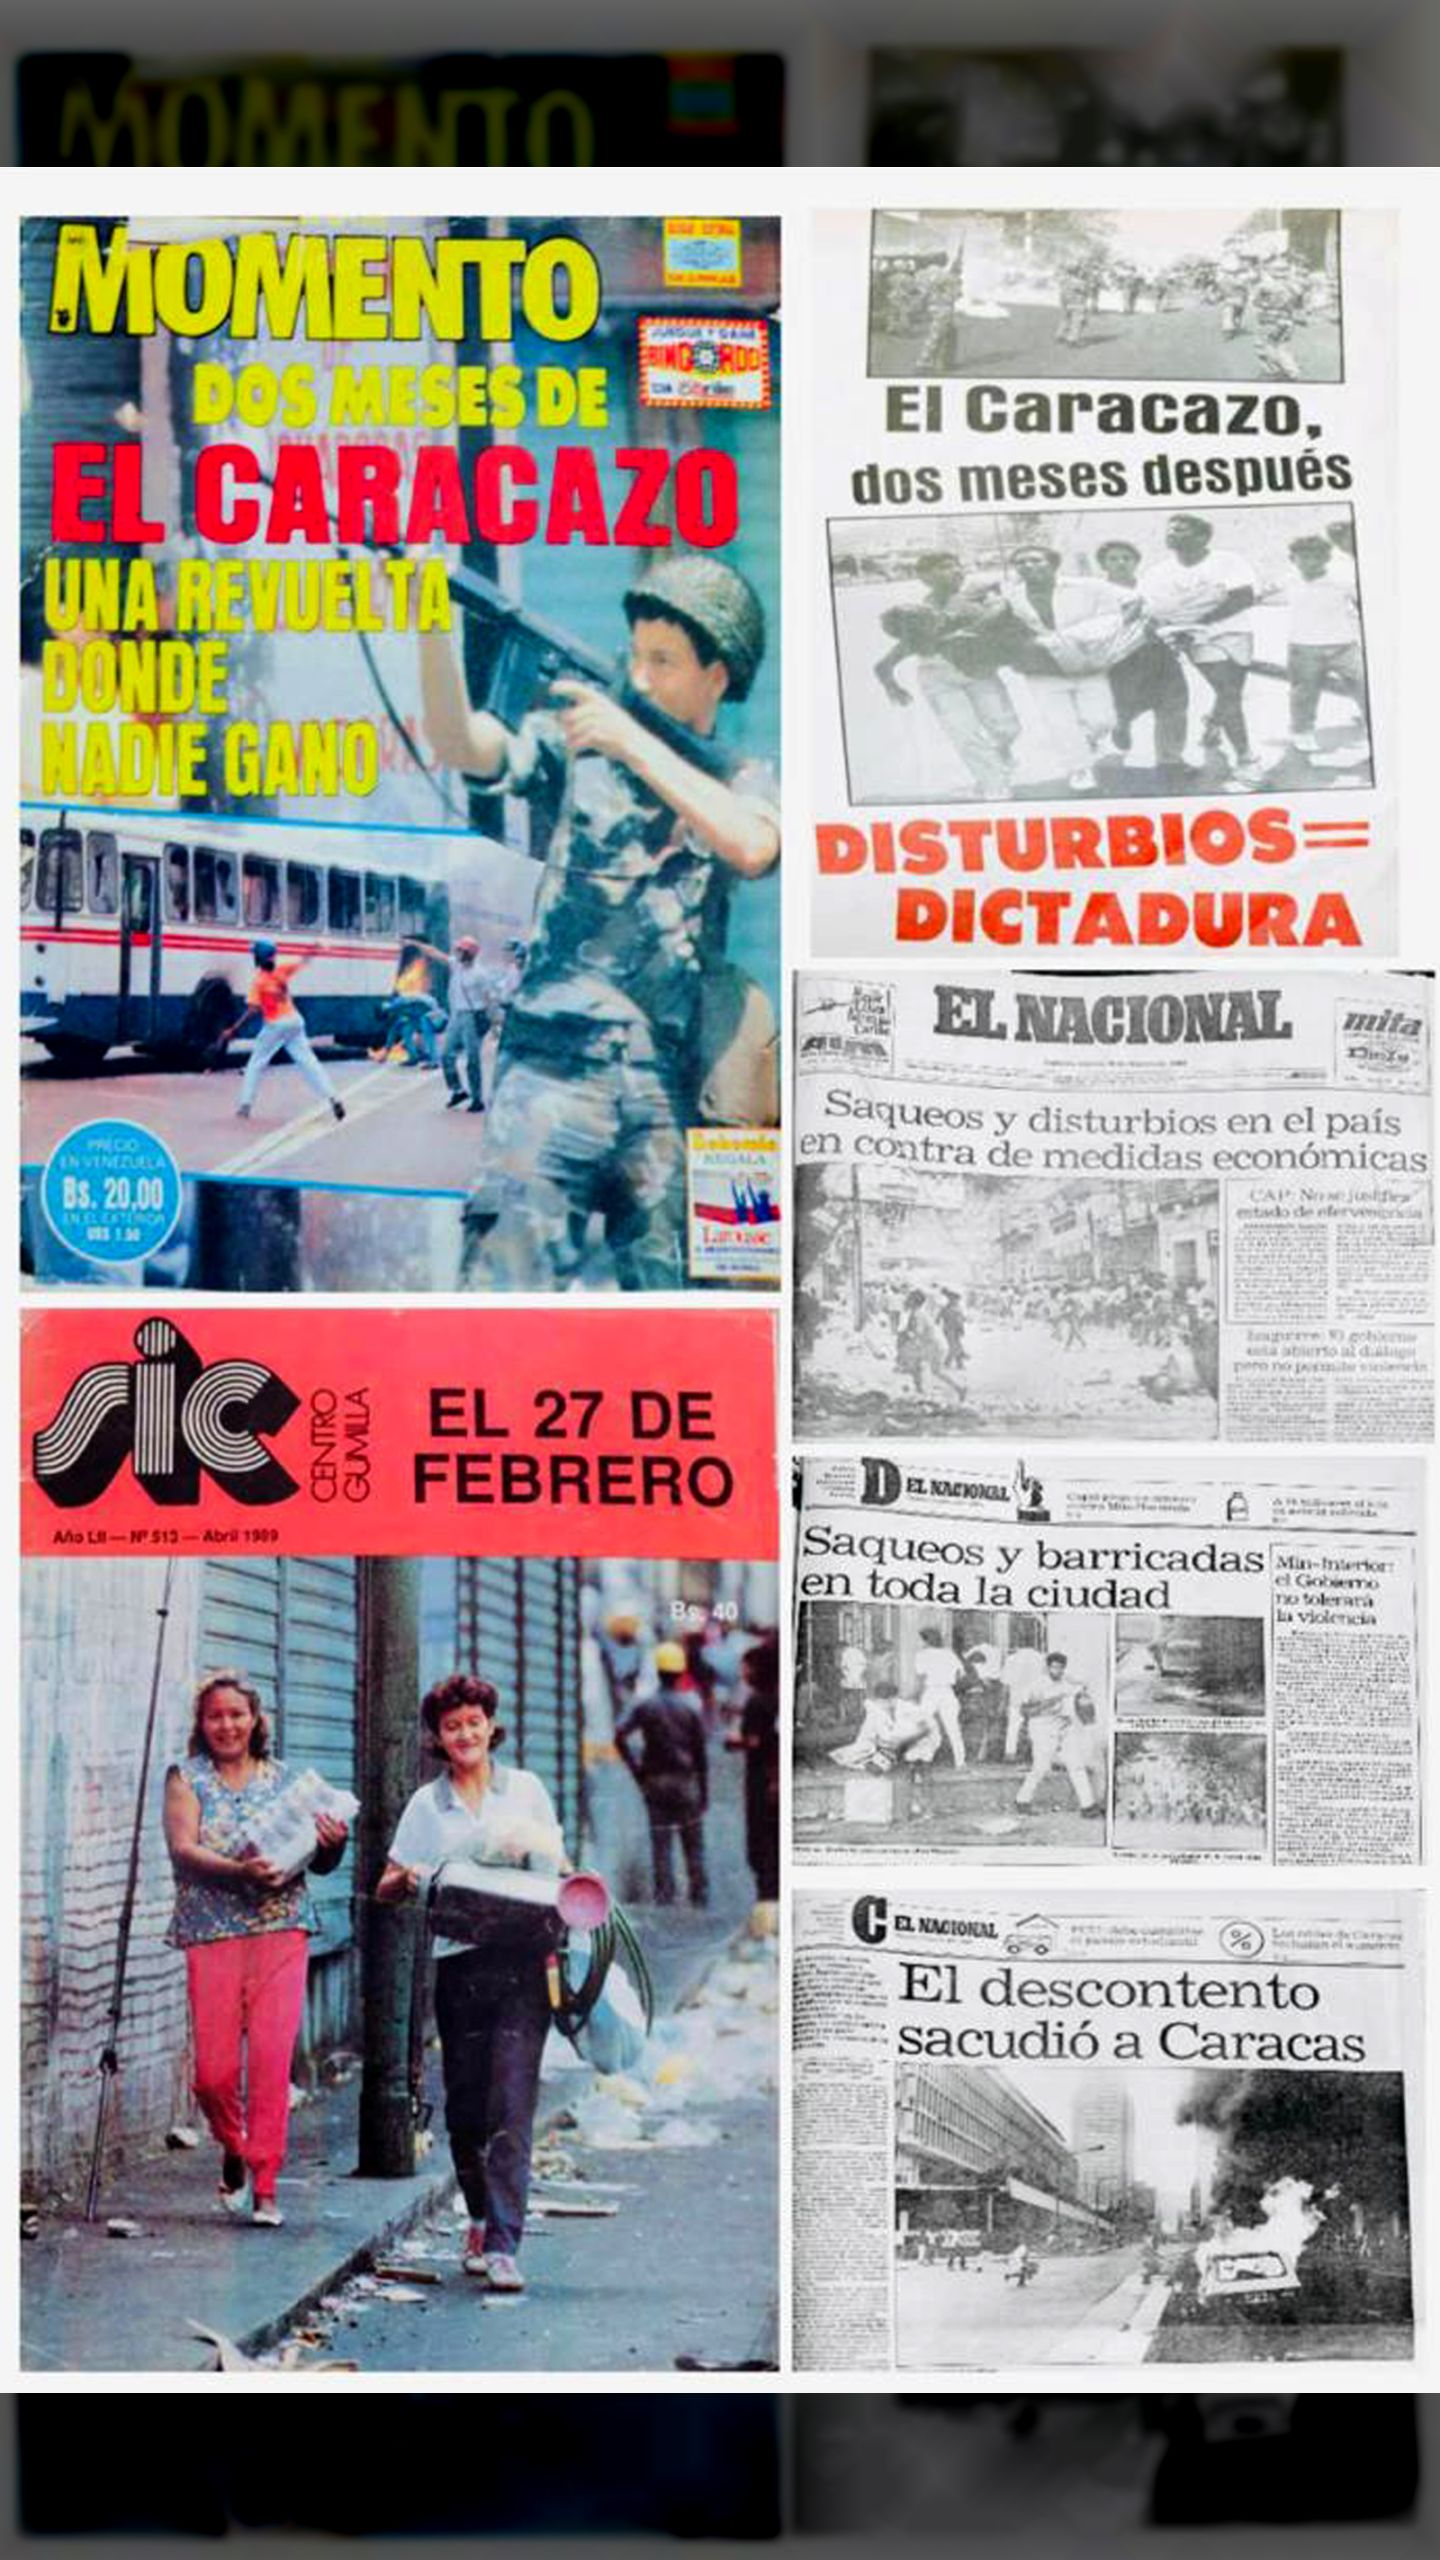 EL CARACAZO” (Últimas Noticias, 27 febrero - 11 de marzo 1989 / Revista SIC Nº 513-abril 1989)